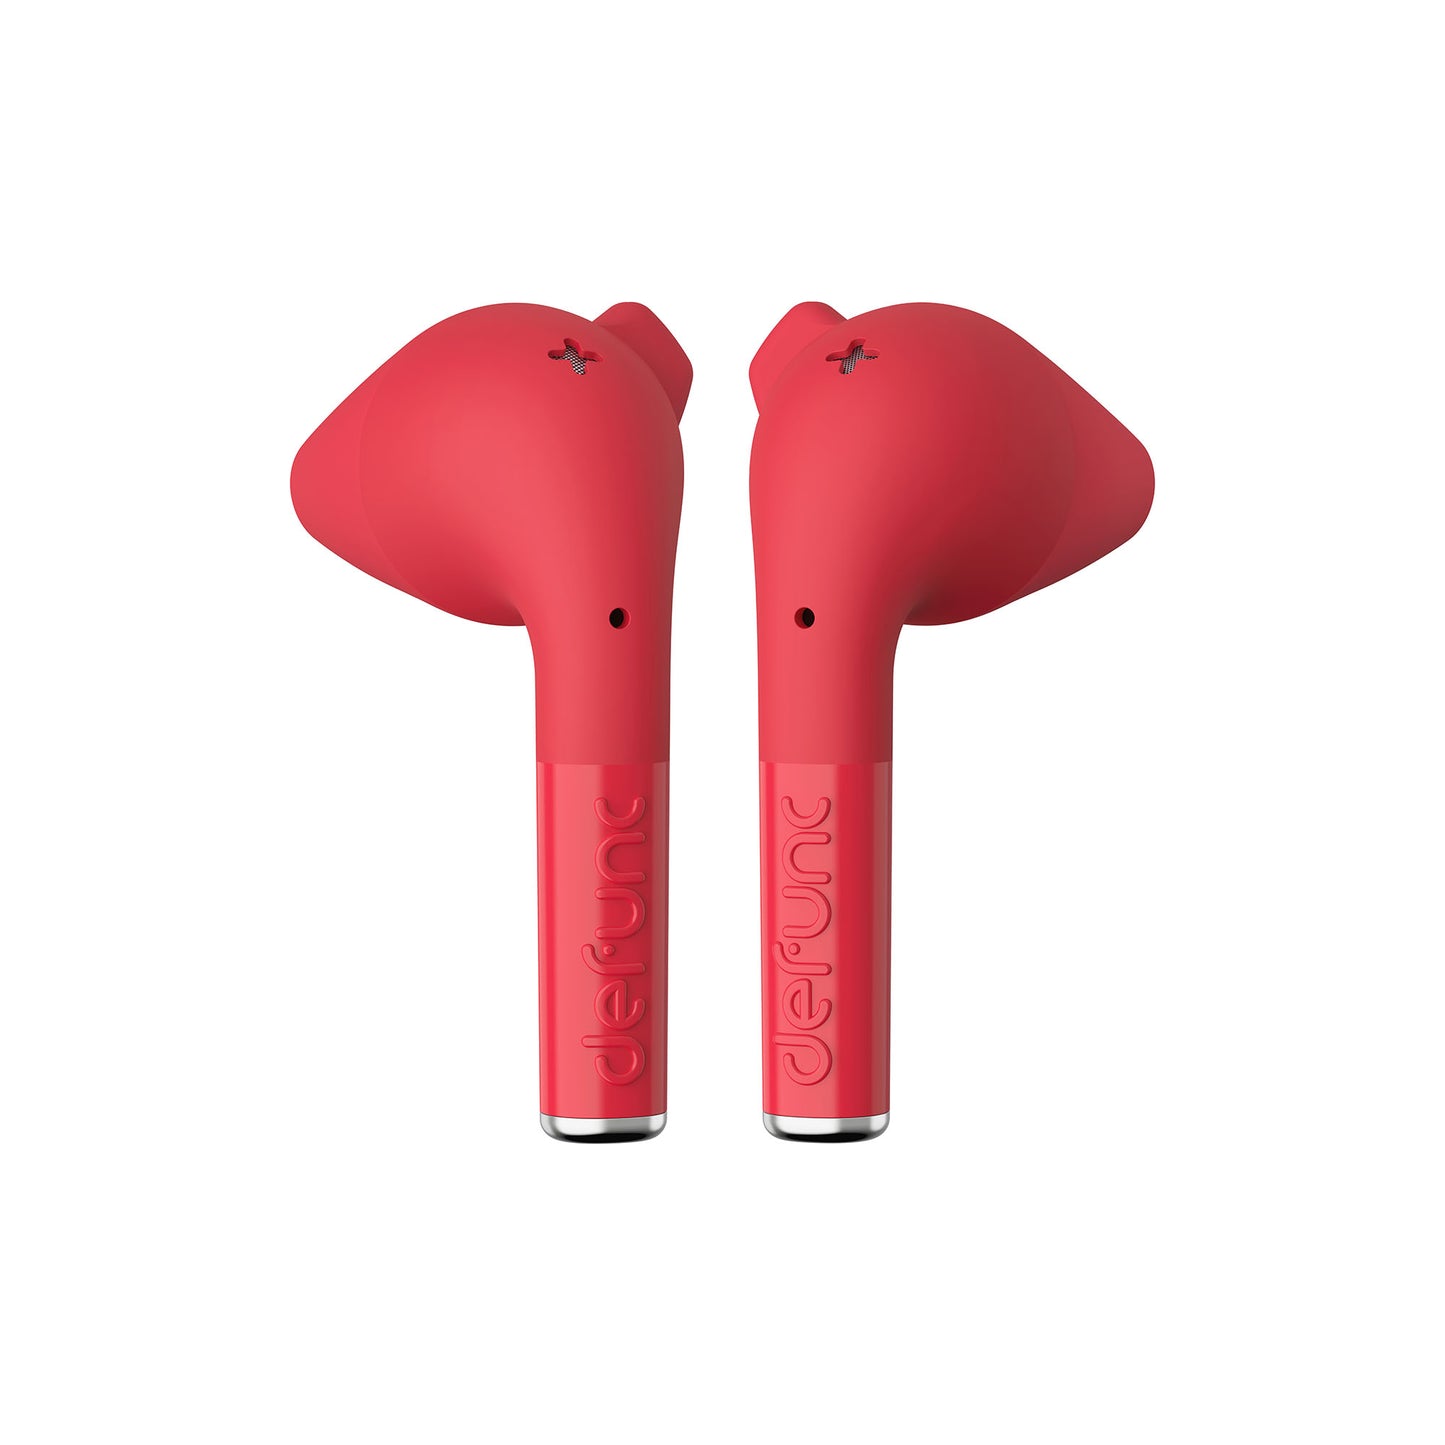 DEFUNC True Go Slim True Wireless Earphones - Red